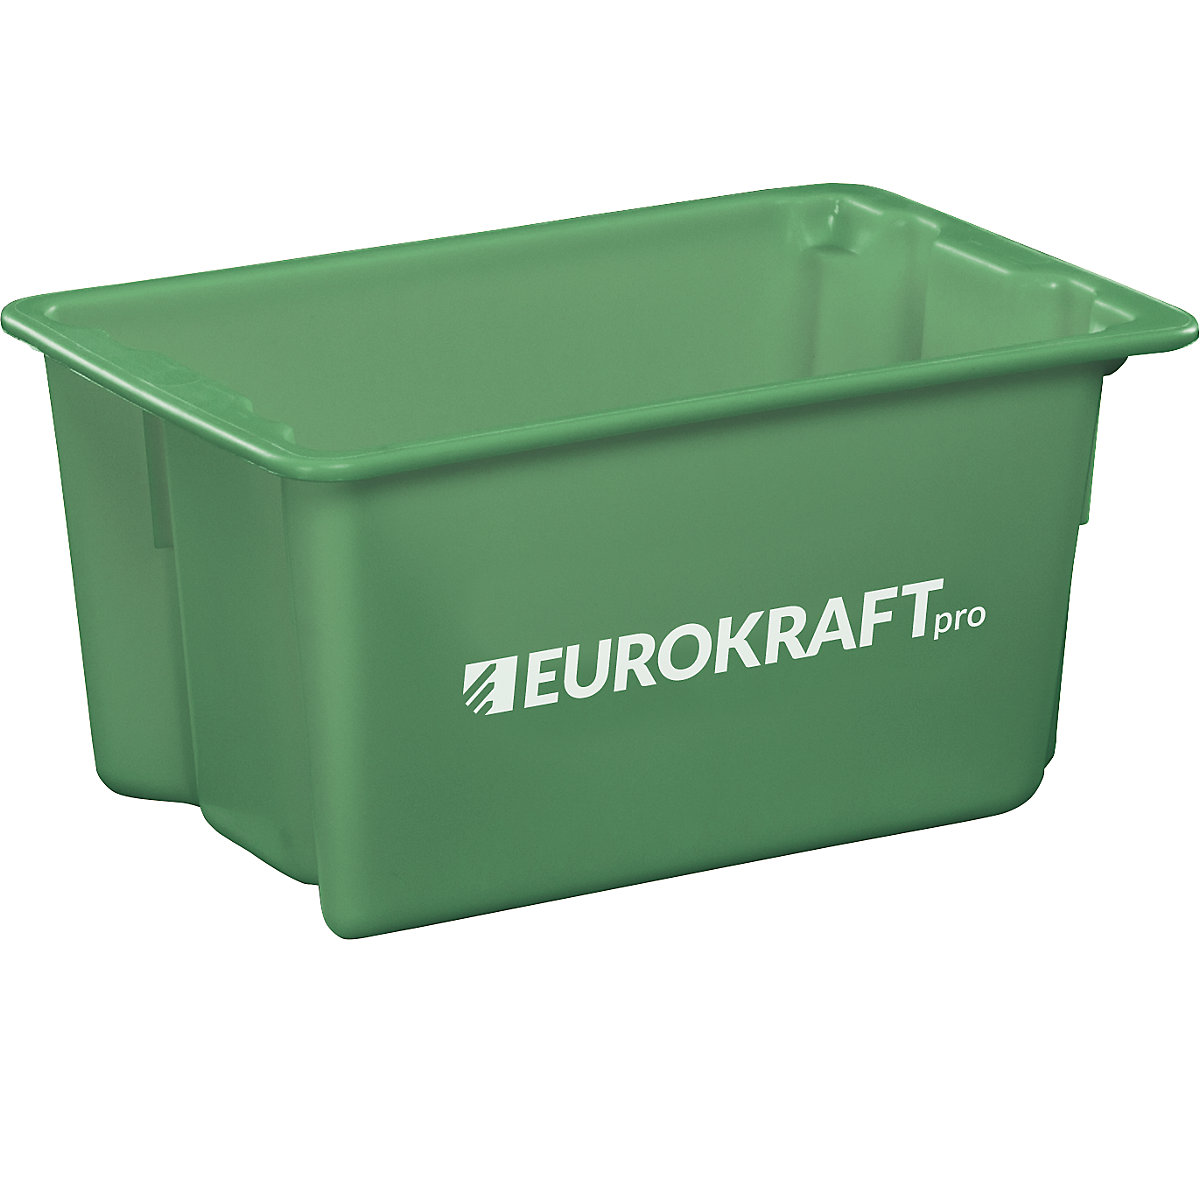 Drehstapelbehälter aus lebensmittelechtem Polypropylen eurokraft pro, Inhalt 50 Liter, VE 3 Stk, Wände und Boden geschlossen, grün